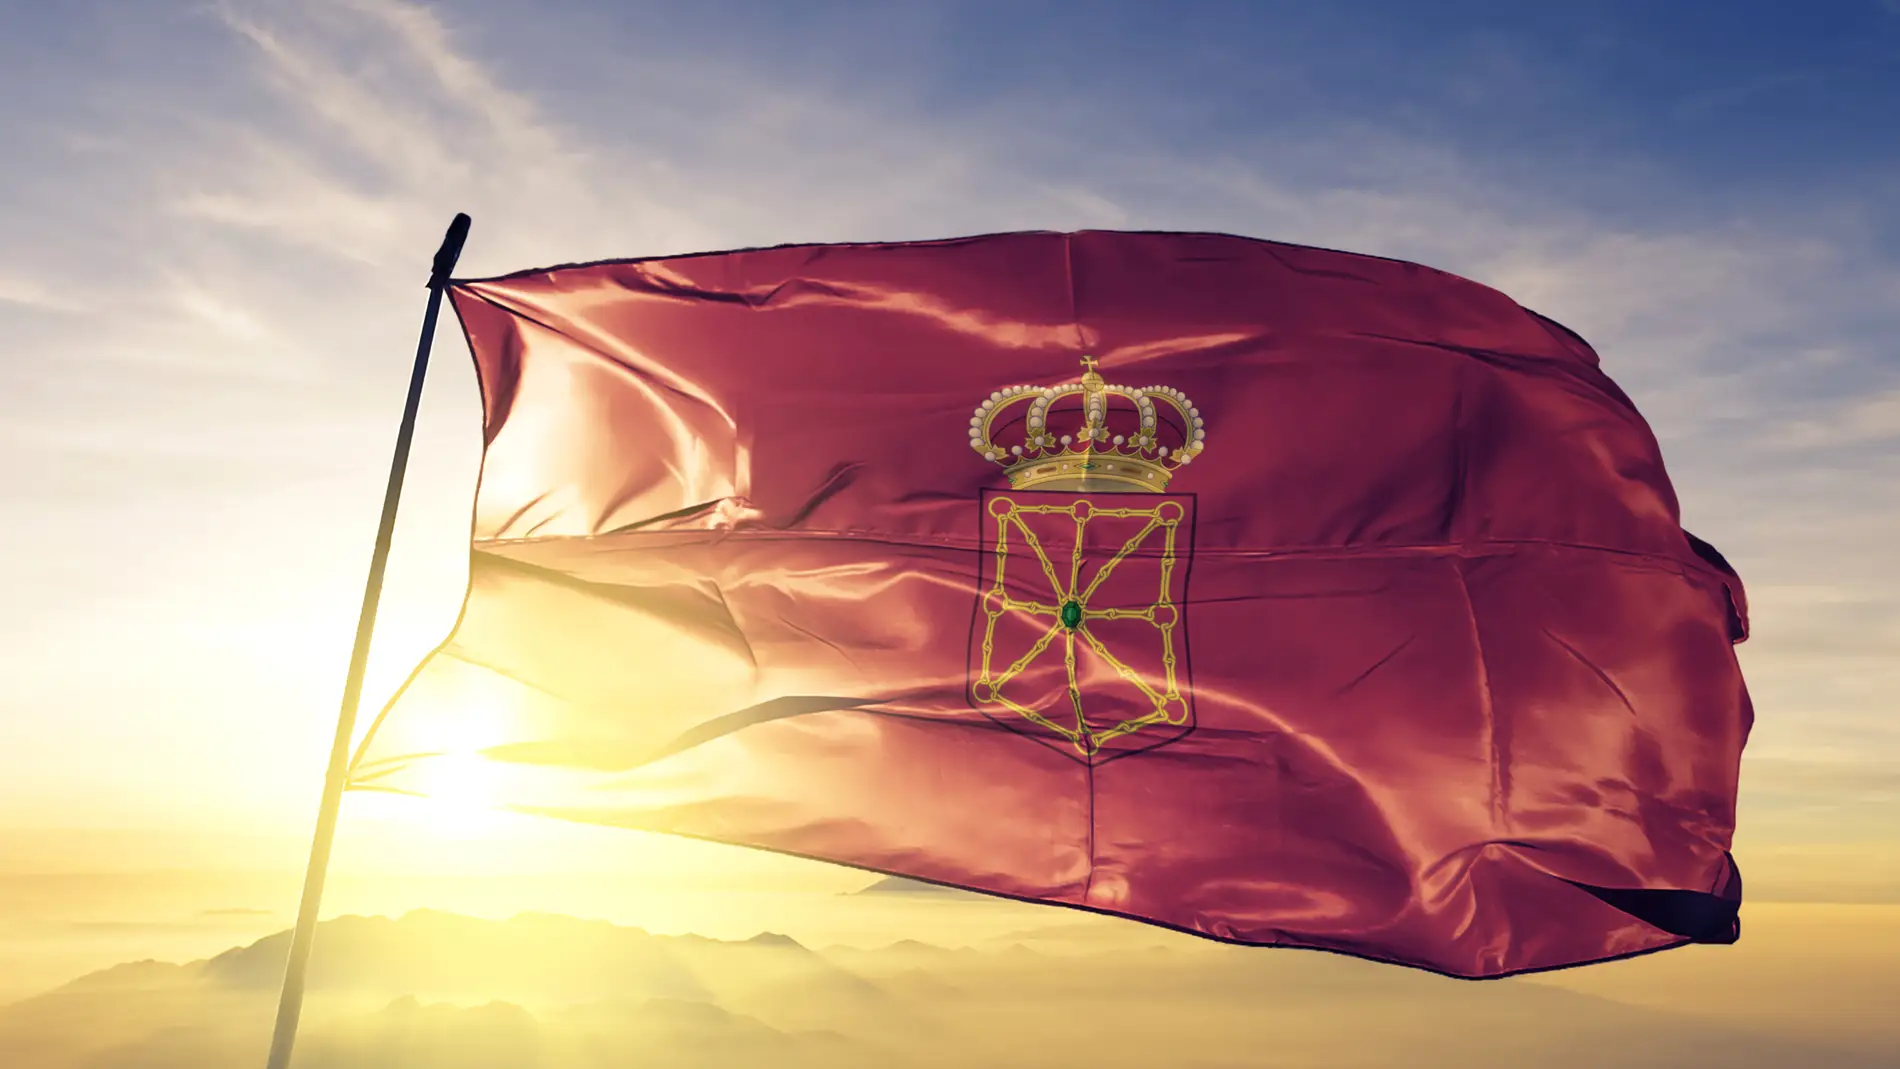 Bandera de Navarra